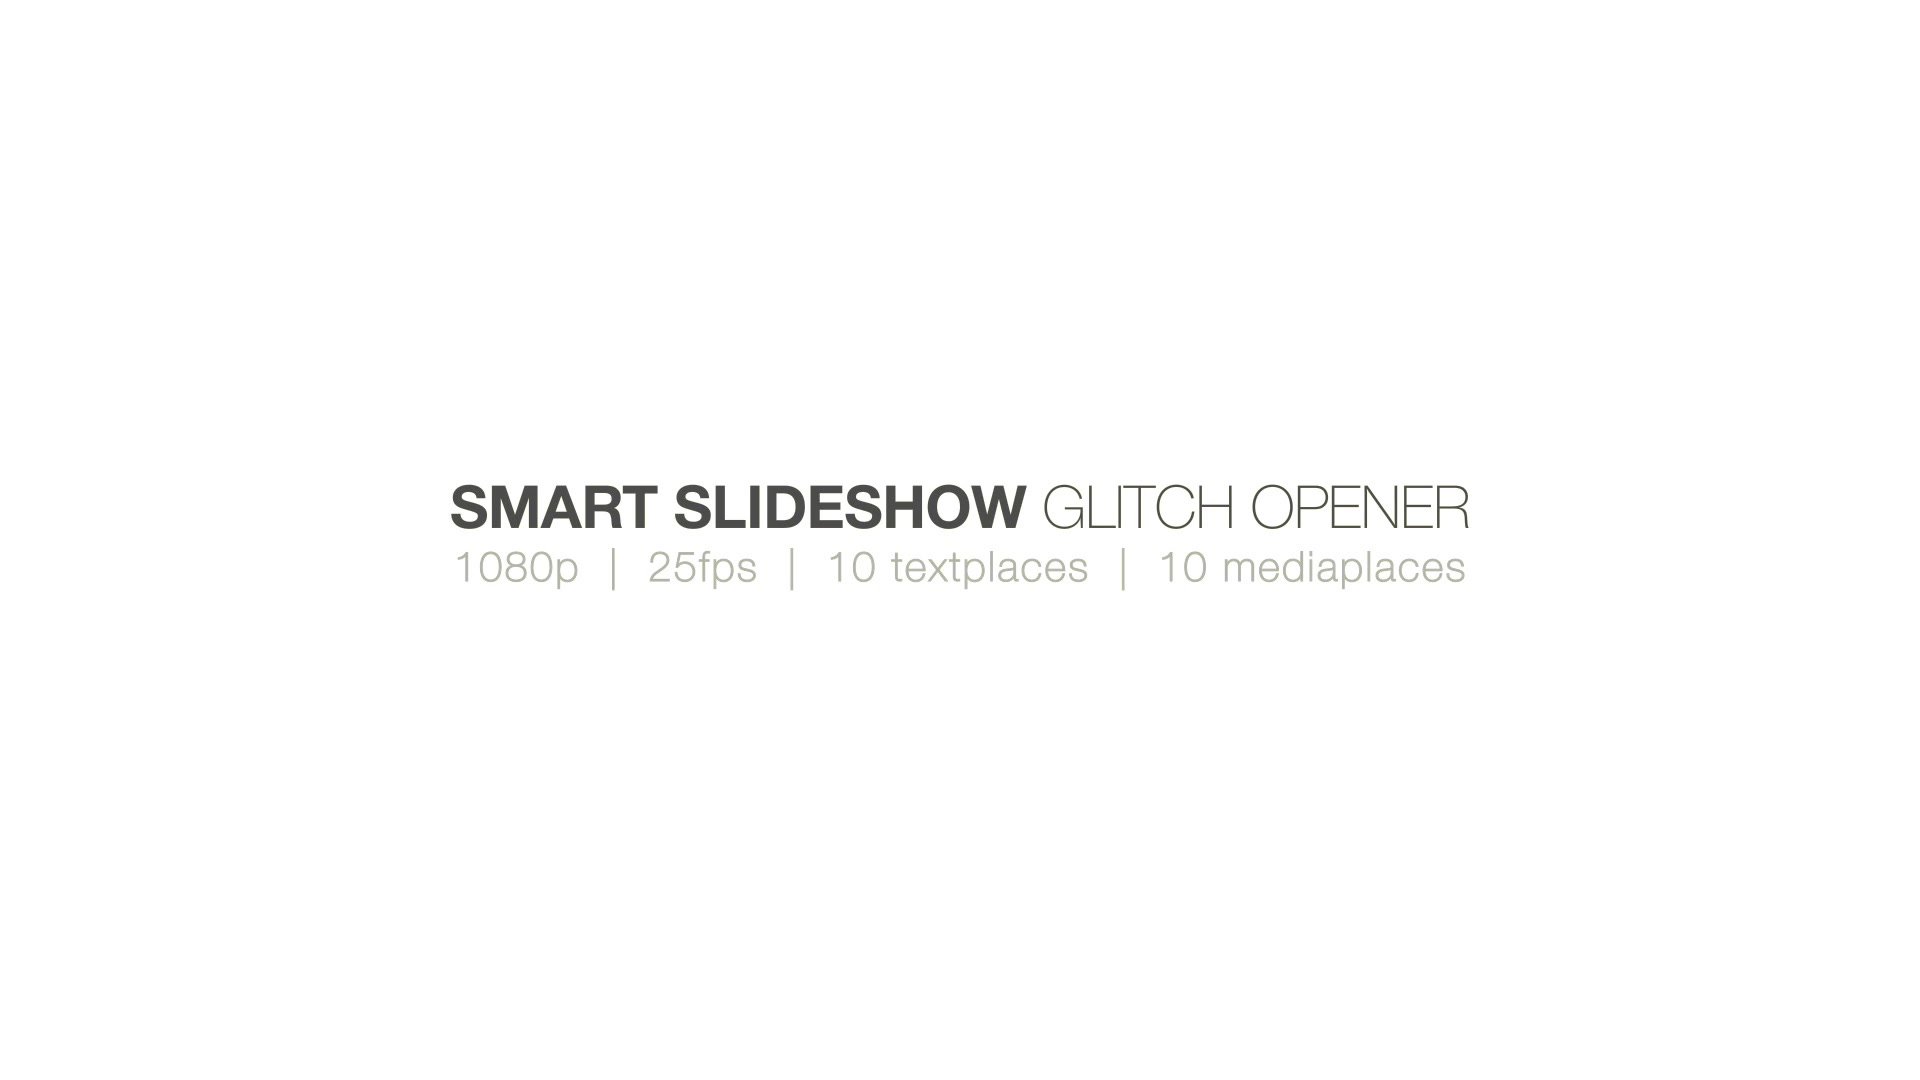 Smart Slideshow Glitch Opener Videohive 28340149 Premiere Pro Image 12